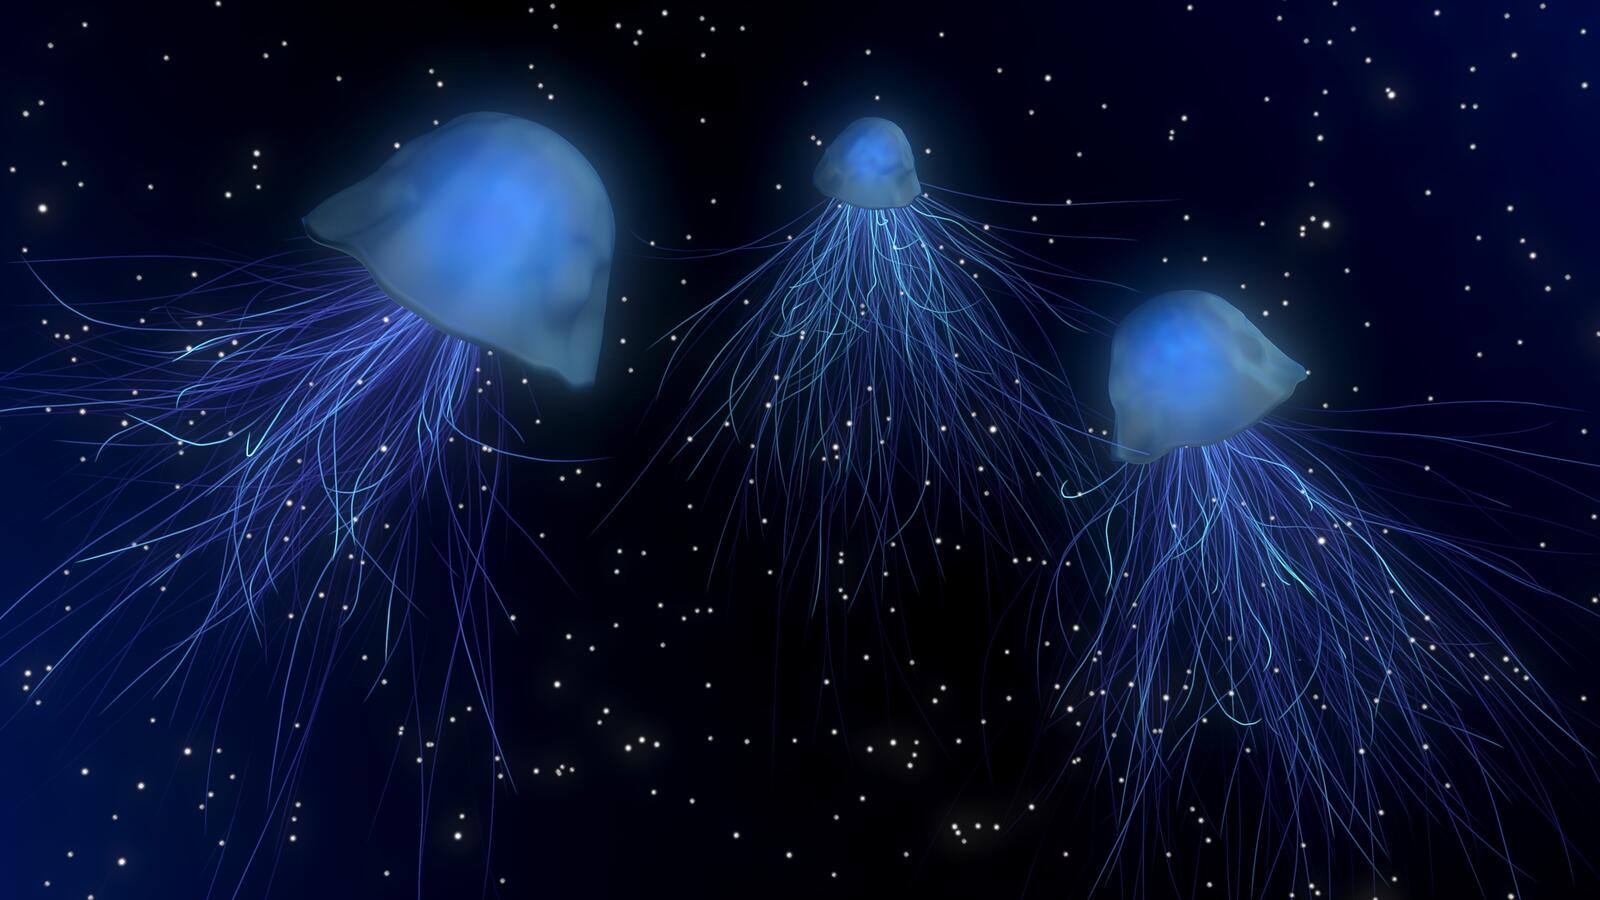 Бесплатное фото Три медузы под водой